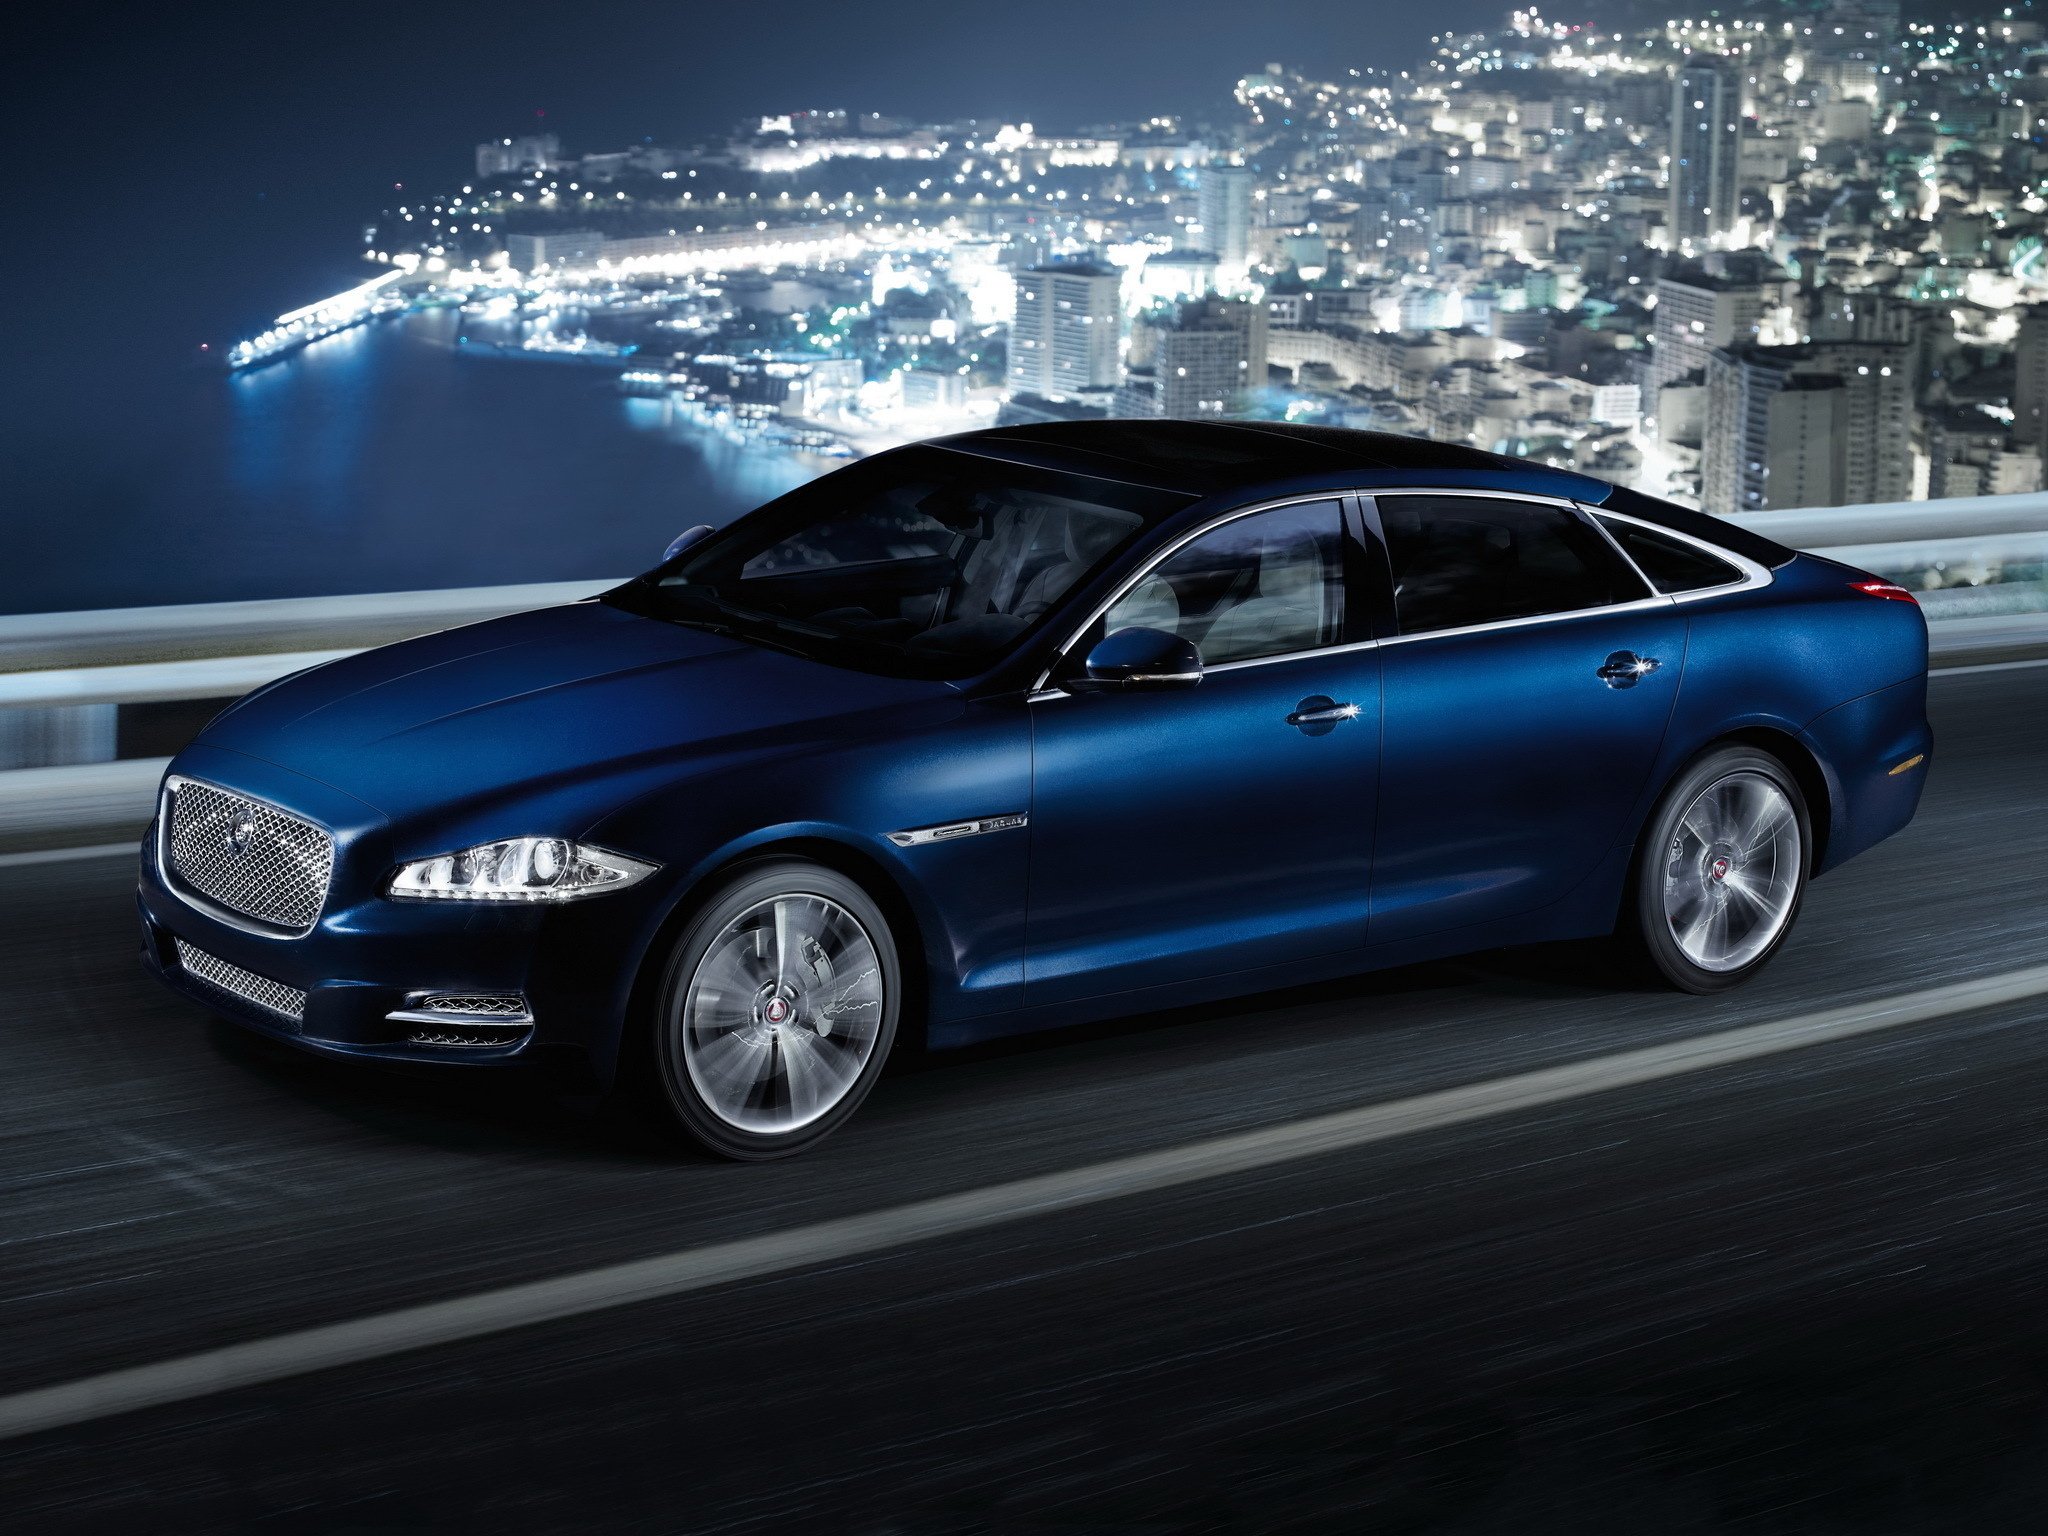 Ягуар XJ. Jaguar XJ 2015 синий. Ягуар XJ 2012. Ягуар XJ 2022. Покажи синие машины